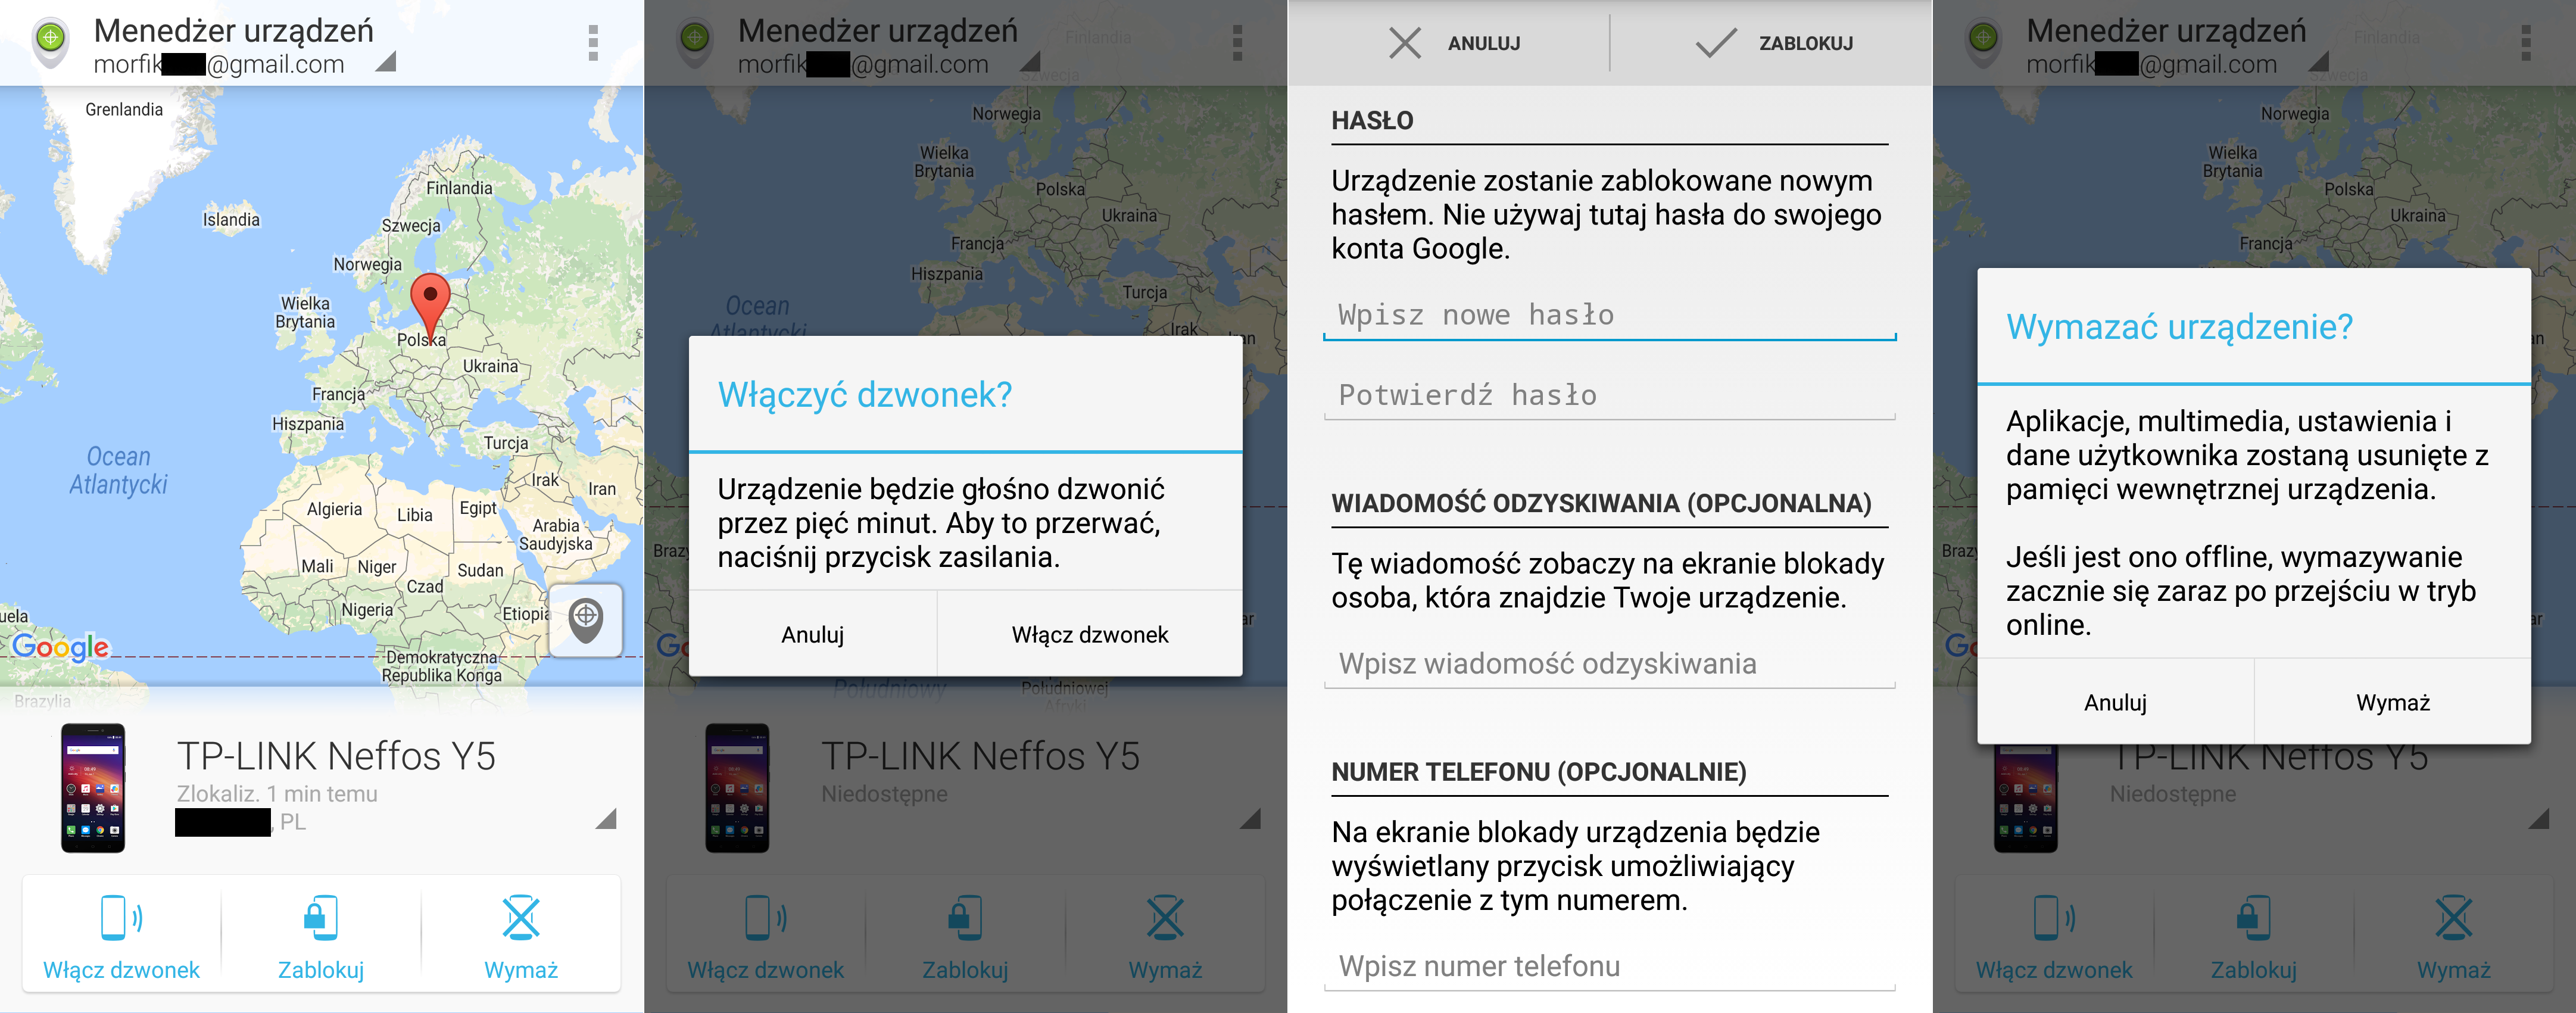 lokalizacja-smartfon-telefon-android-kradziez-opcje-aplikacji